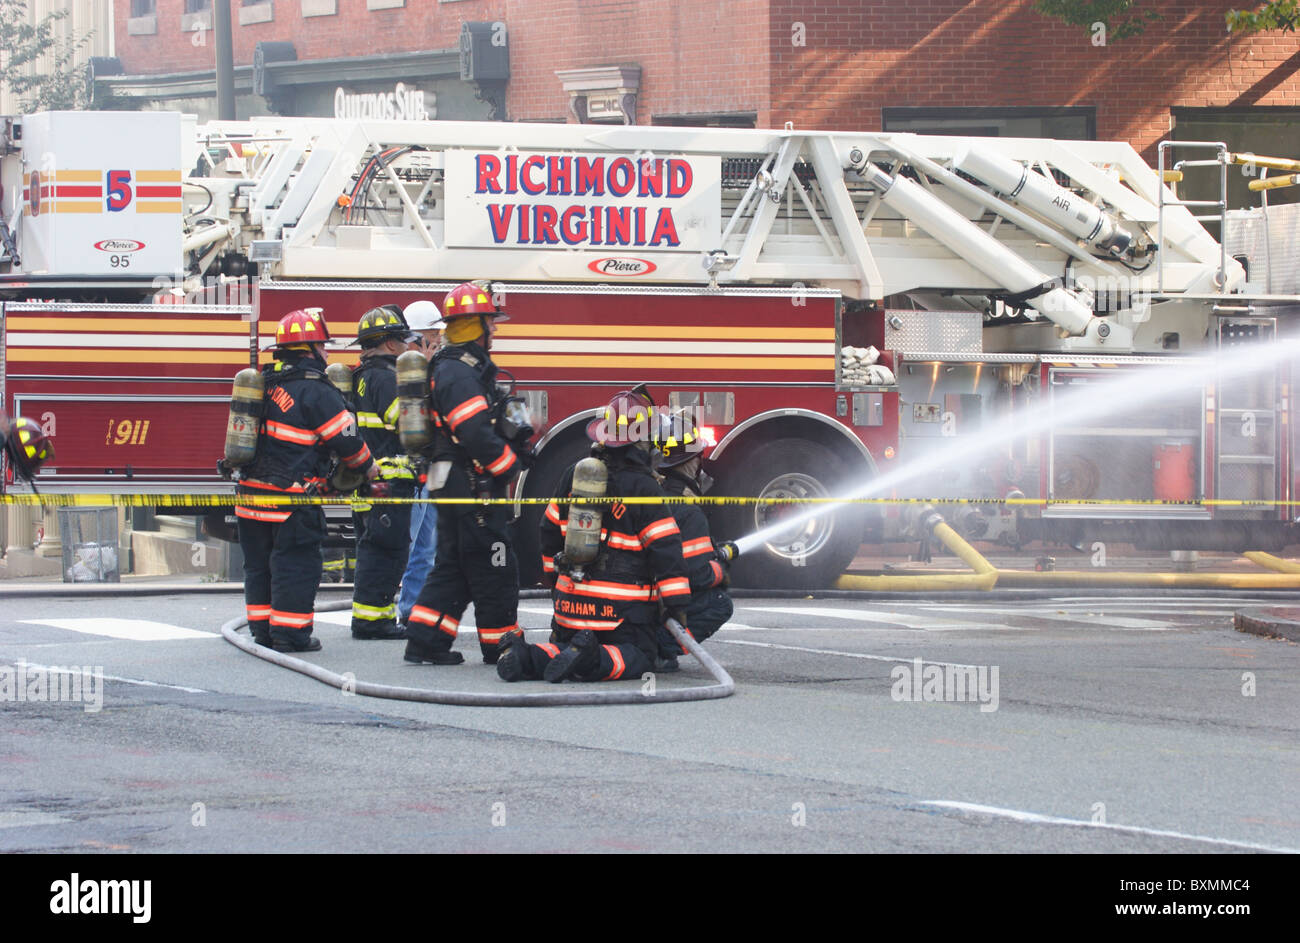 Bomberos combate de incendios y explosiones eléctricas subterráneas en Bank of America, Richmond, Virginia, 2010 Foto de stock